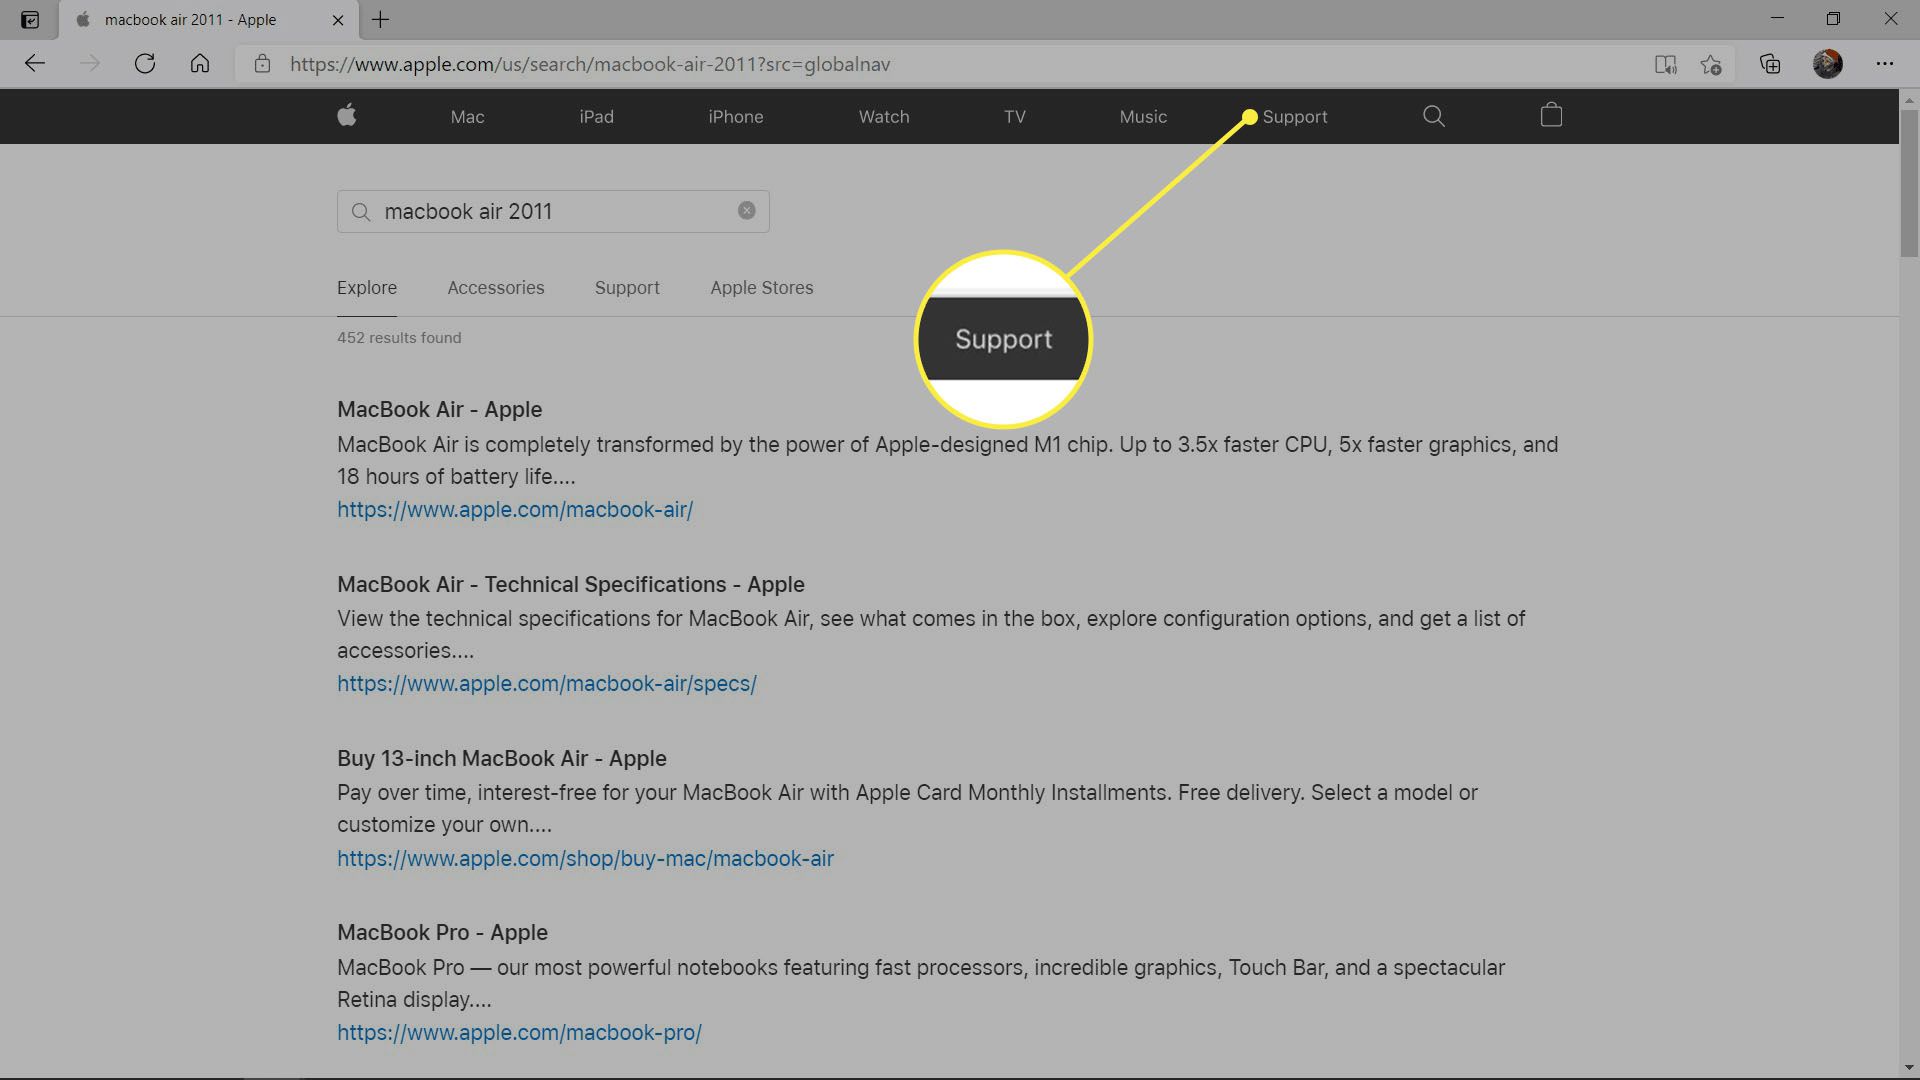 Fliken Support markerad i sökresultaten på Apple.com.